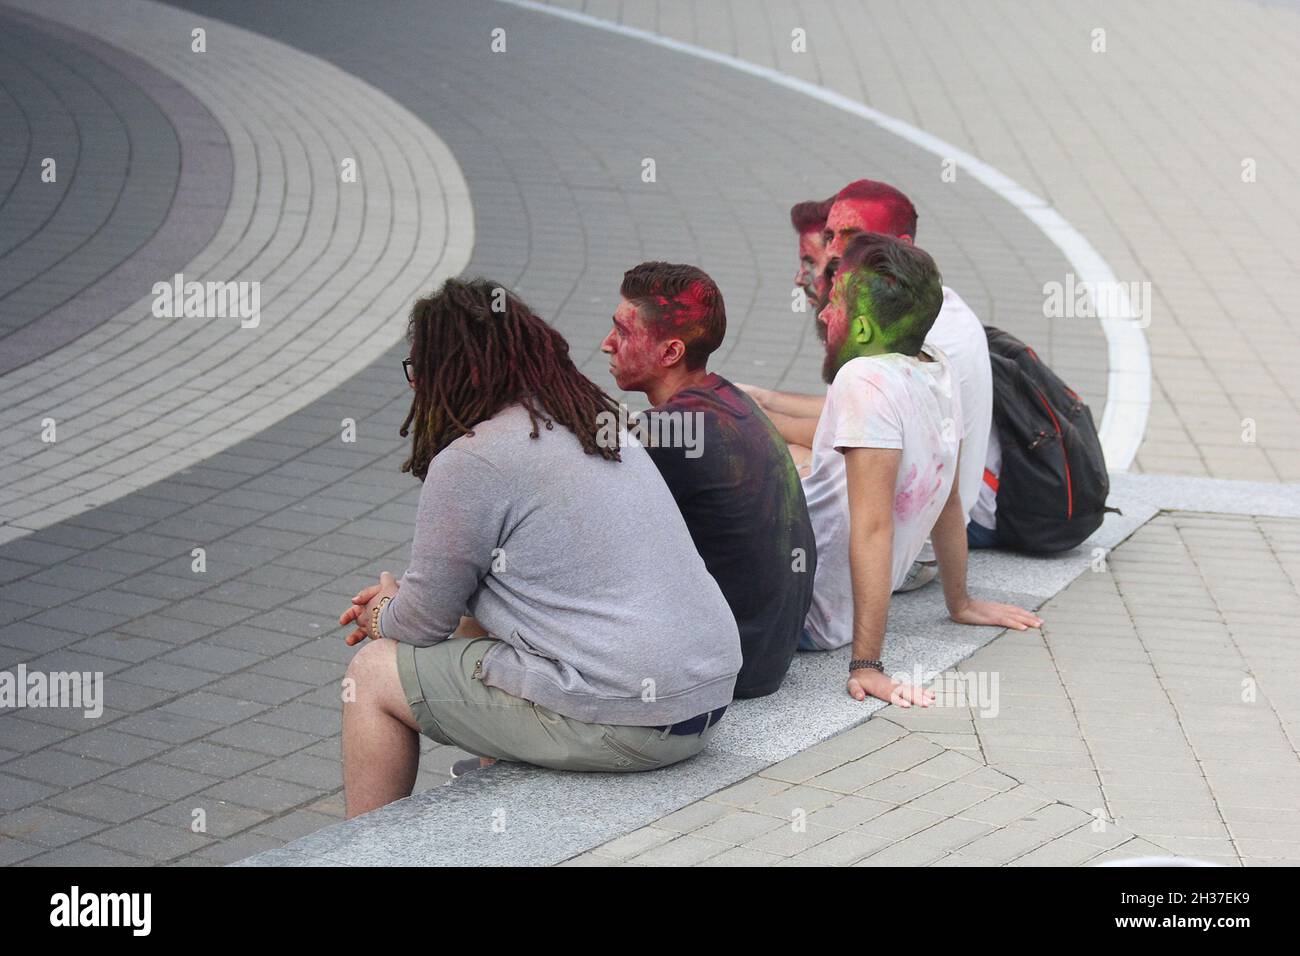 Fotografía editorial. Los hombres se sientan en el banco, las caras cubiertas con pintura de color después del festival holi . 3 de septiembre de 2016, Minsk Foto de stock